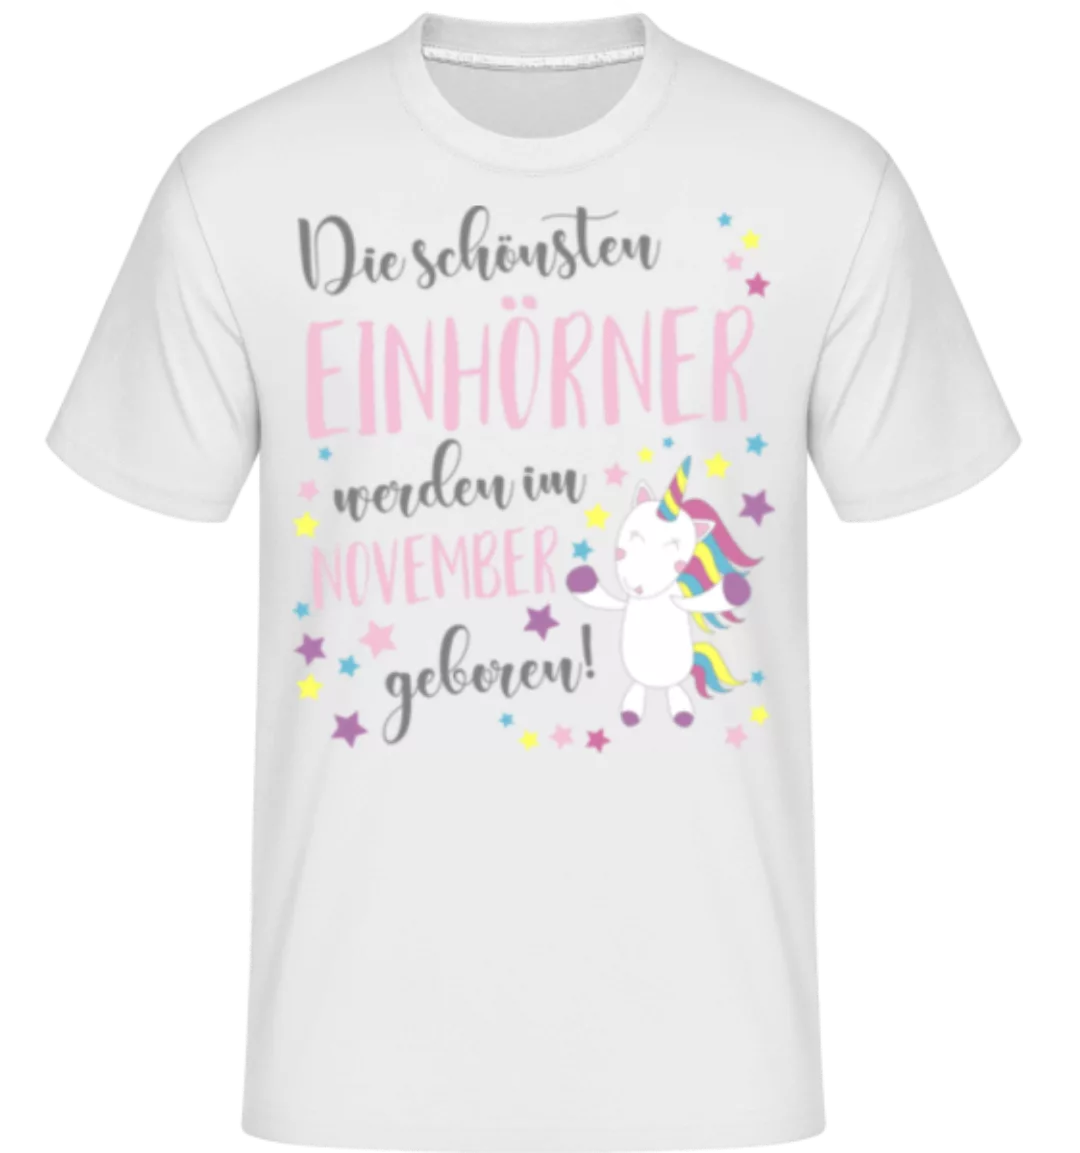 Einhorn Geboren In November · Shirtinator Männer T-Shirt günstig online kaufen